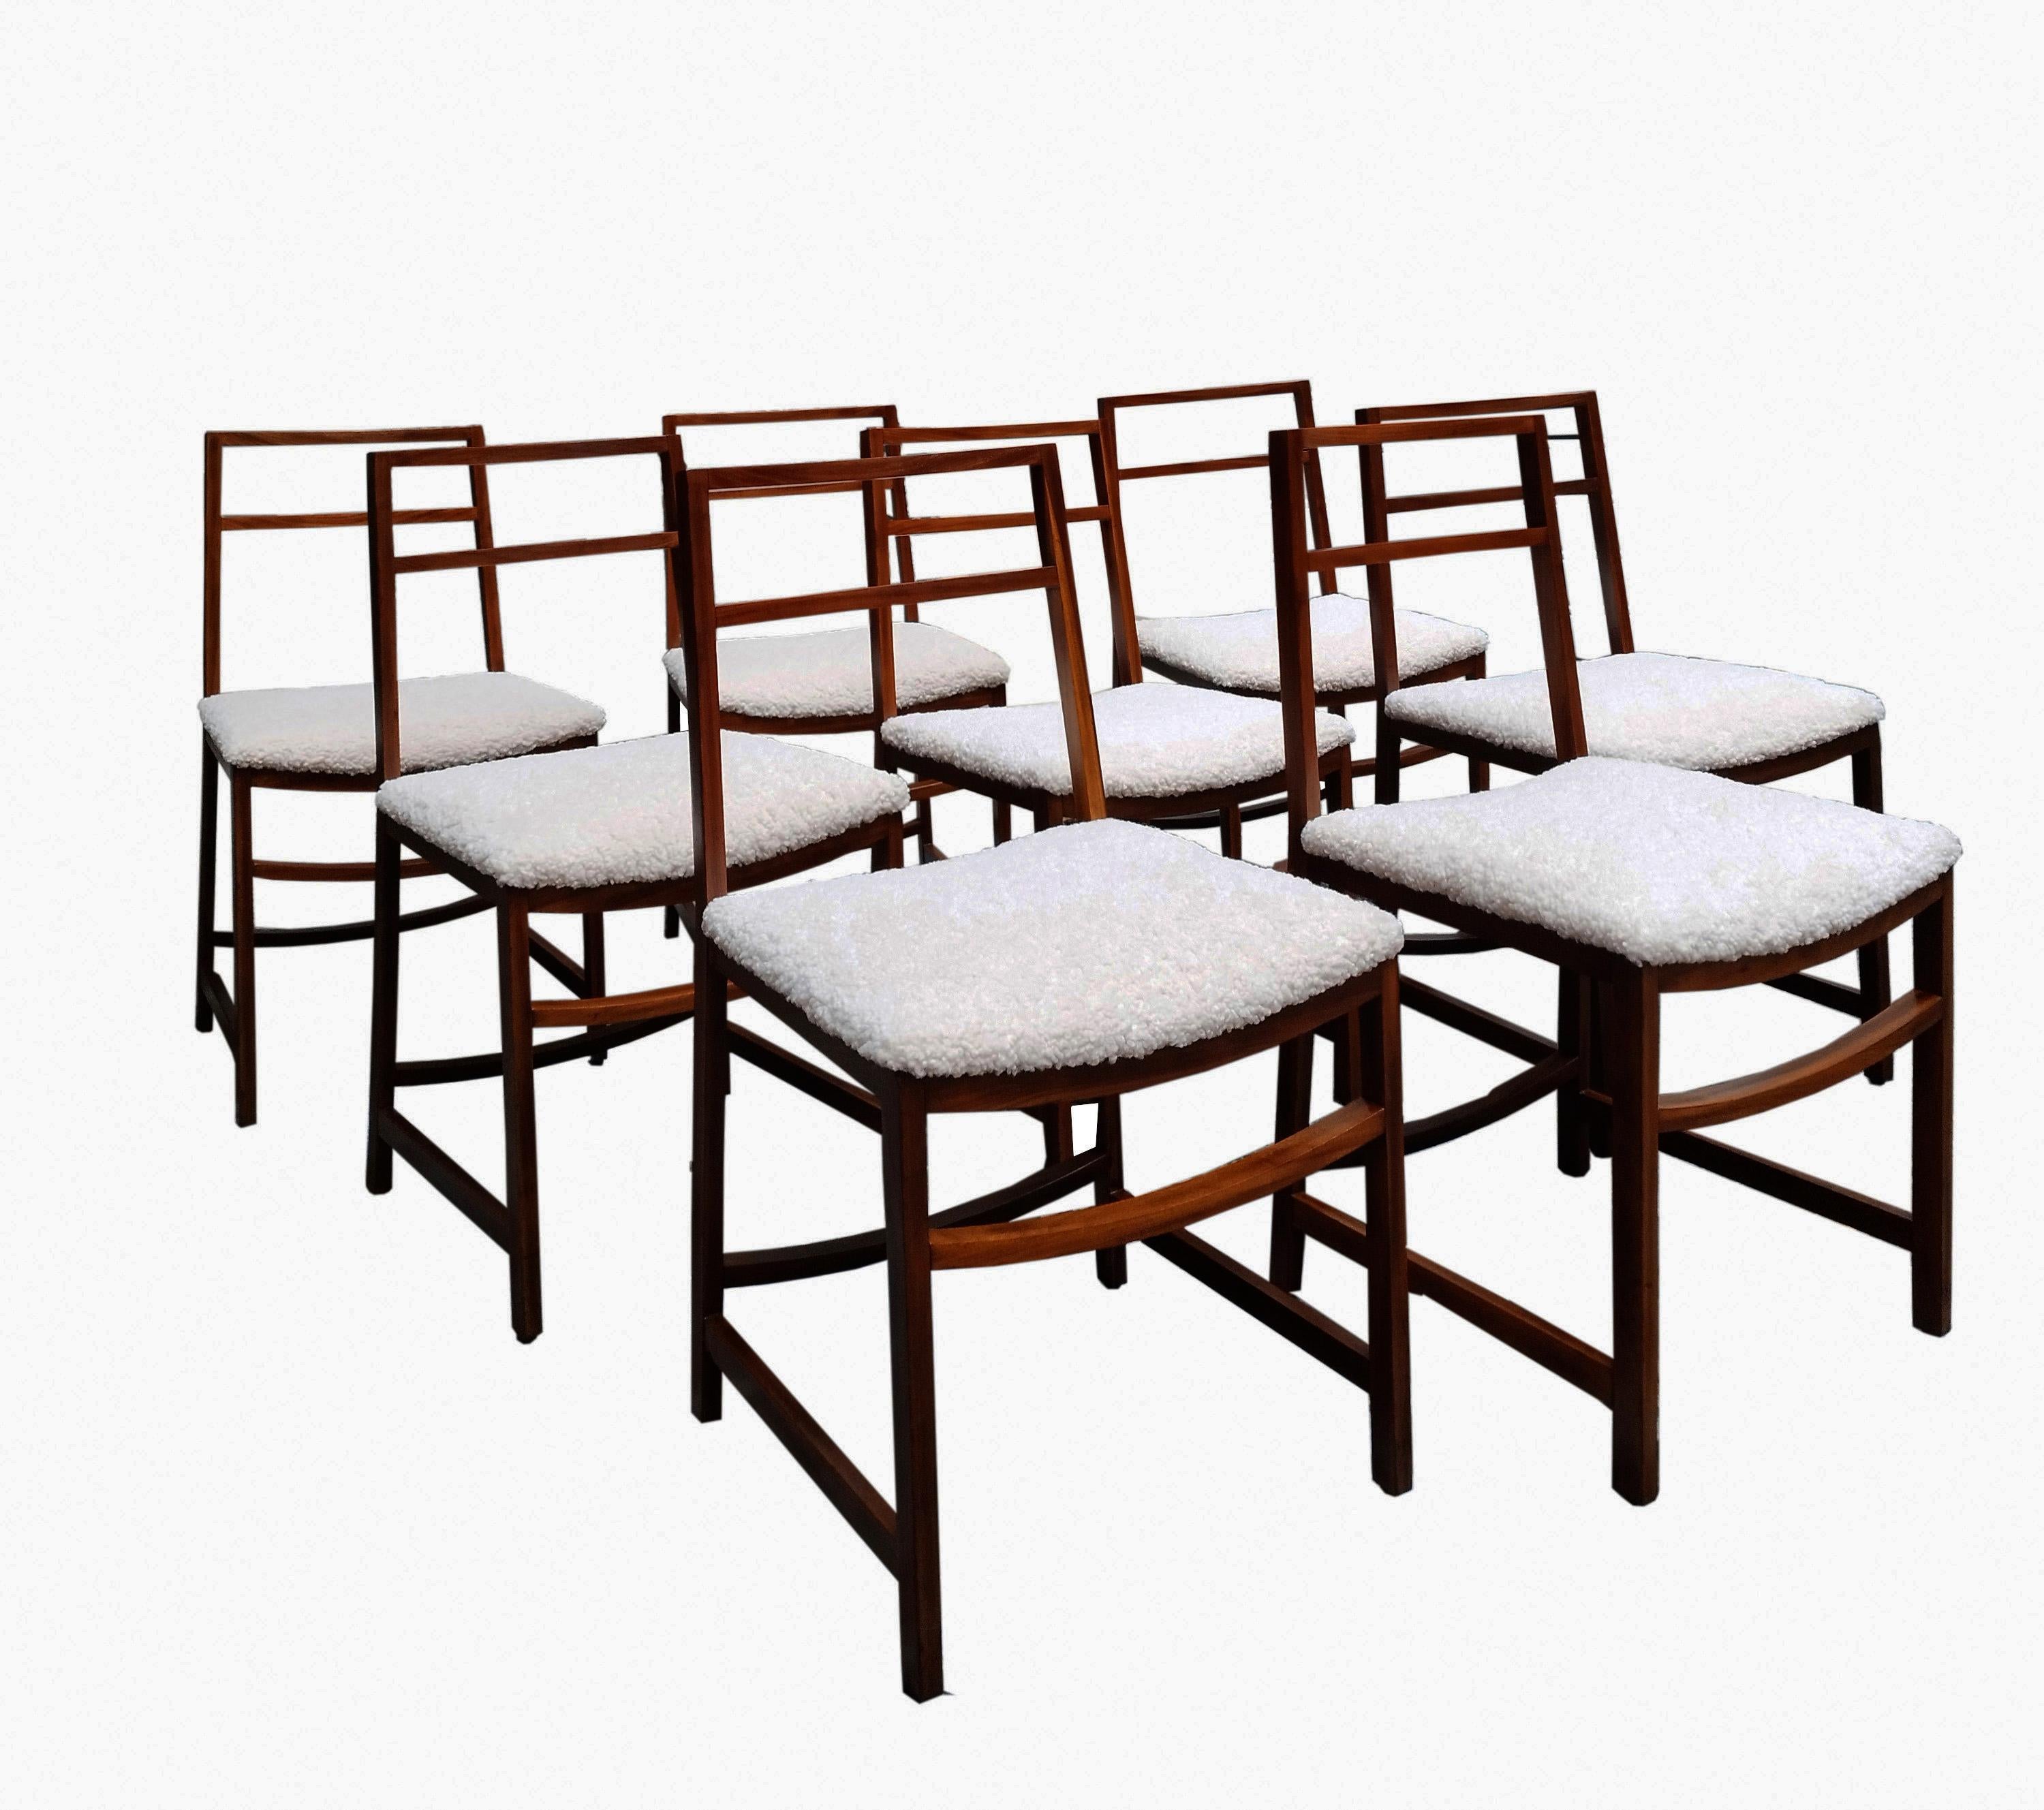 Chaises en bois et tissu bouclé de Renato Venturi qui a conçu ces extraordinaires chaises pour le MIM Rome dans l'Italie des années 1960. Ces chaises fantastiques ont un cadre en bois massif et des sièges en tissu bouclette ivoire magnifiquement